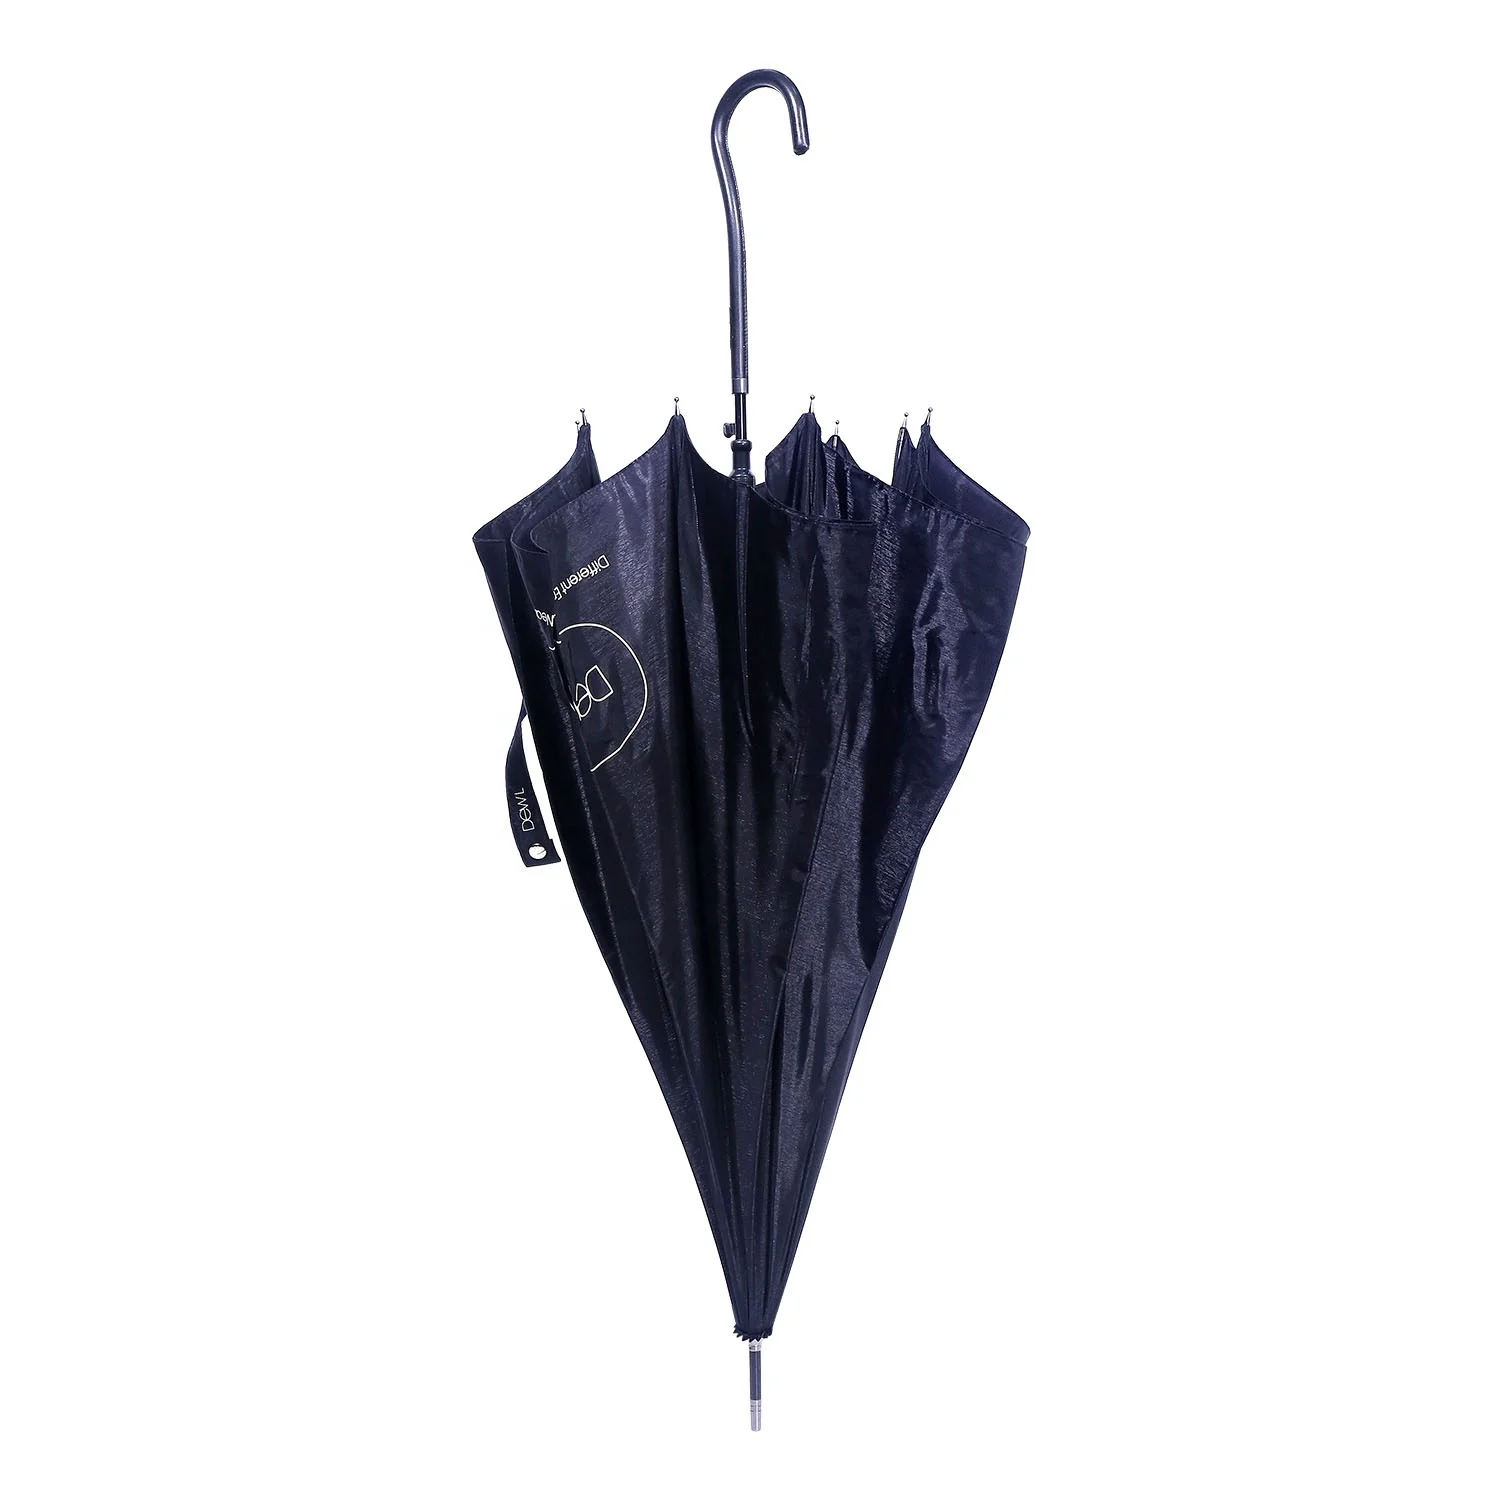 

cheap brand umbrella with straight auto open umbrella for promotion umbrella